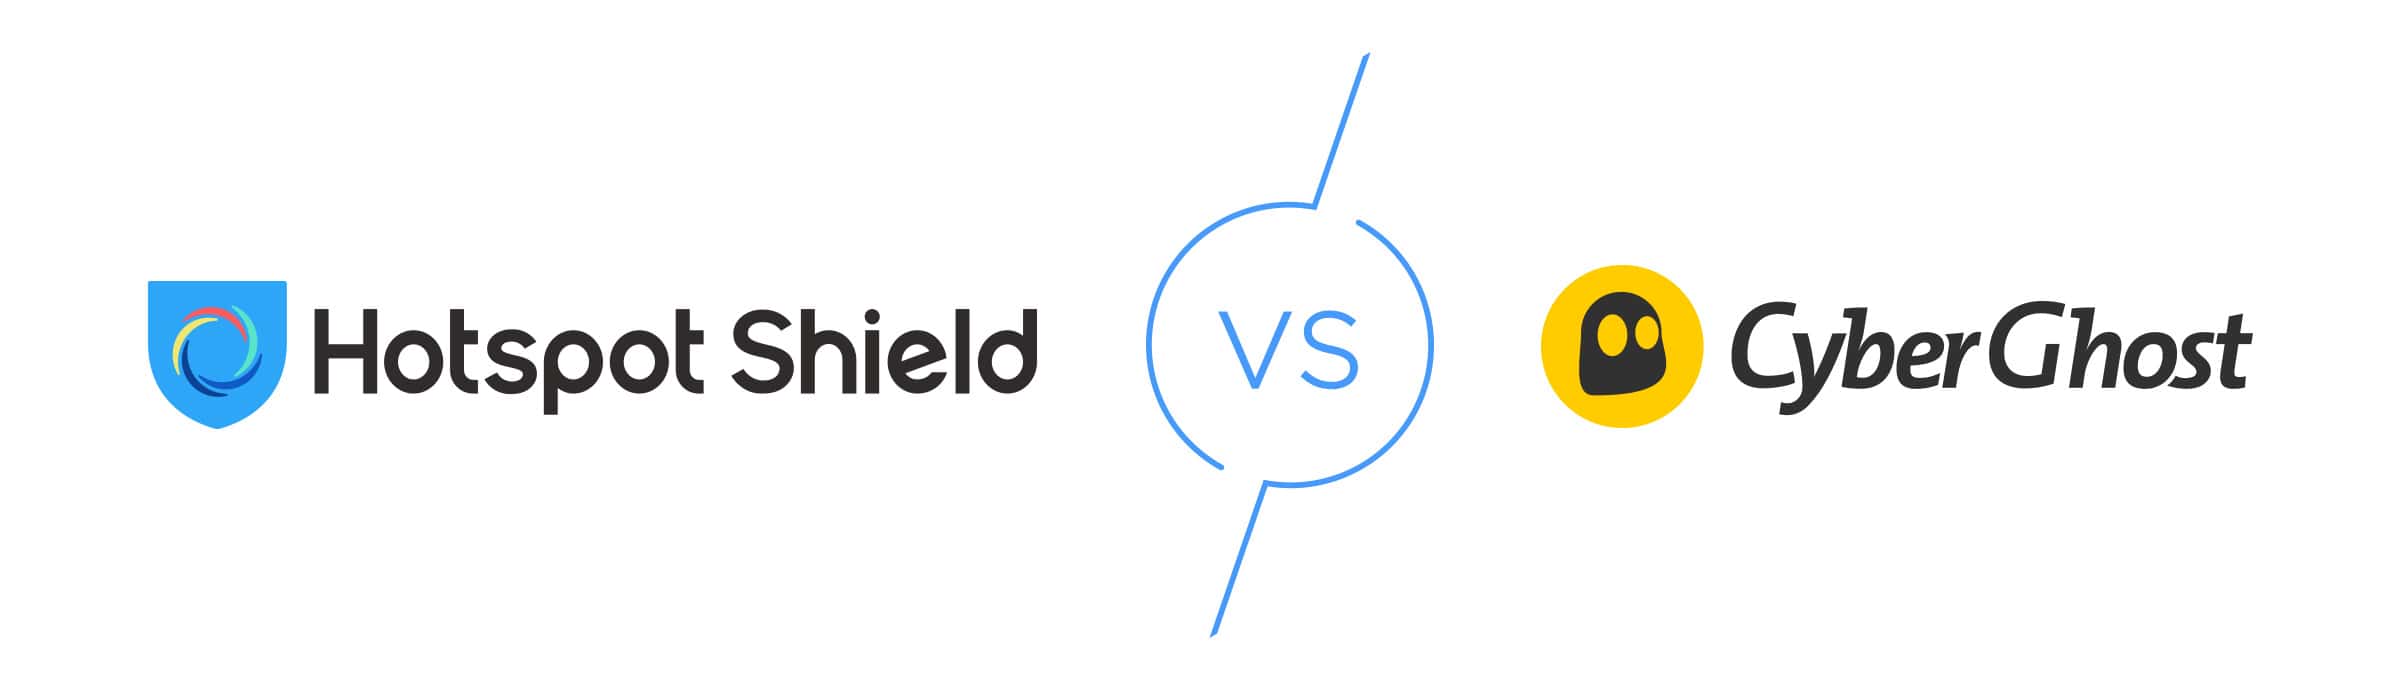 Hotspot Shield vs. CyberGhost, Which is Best?